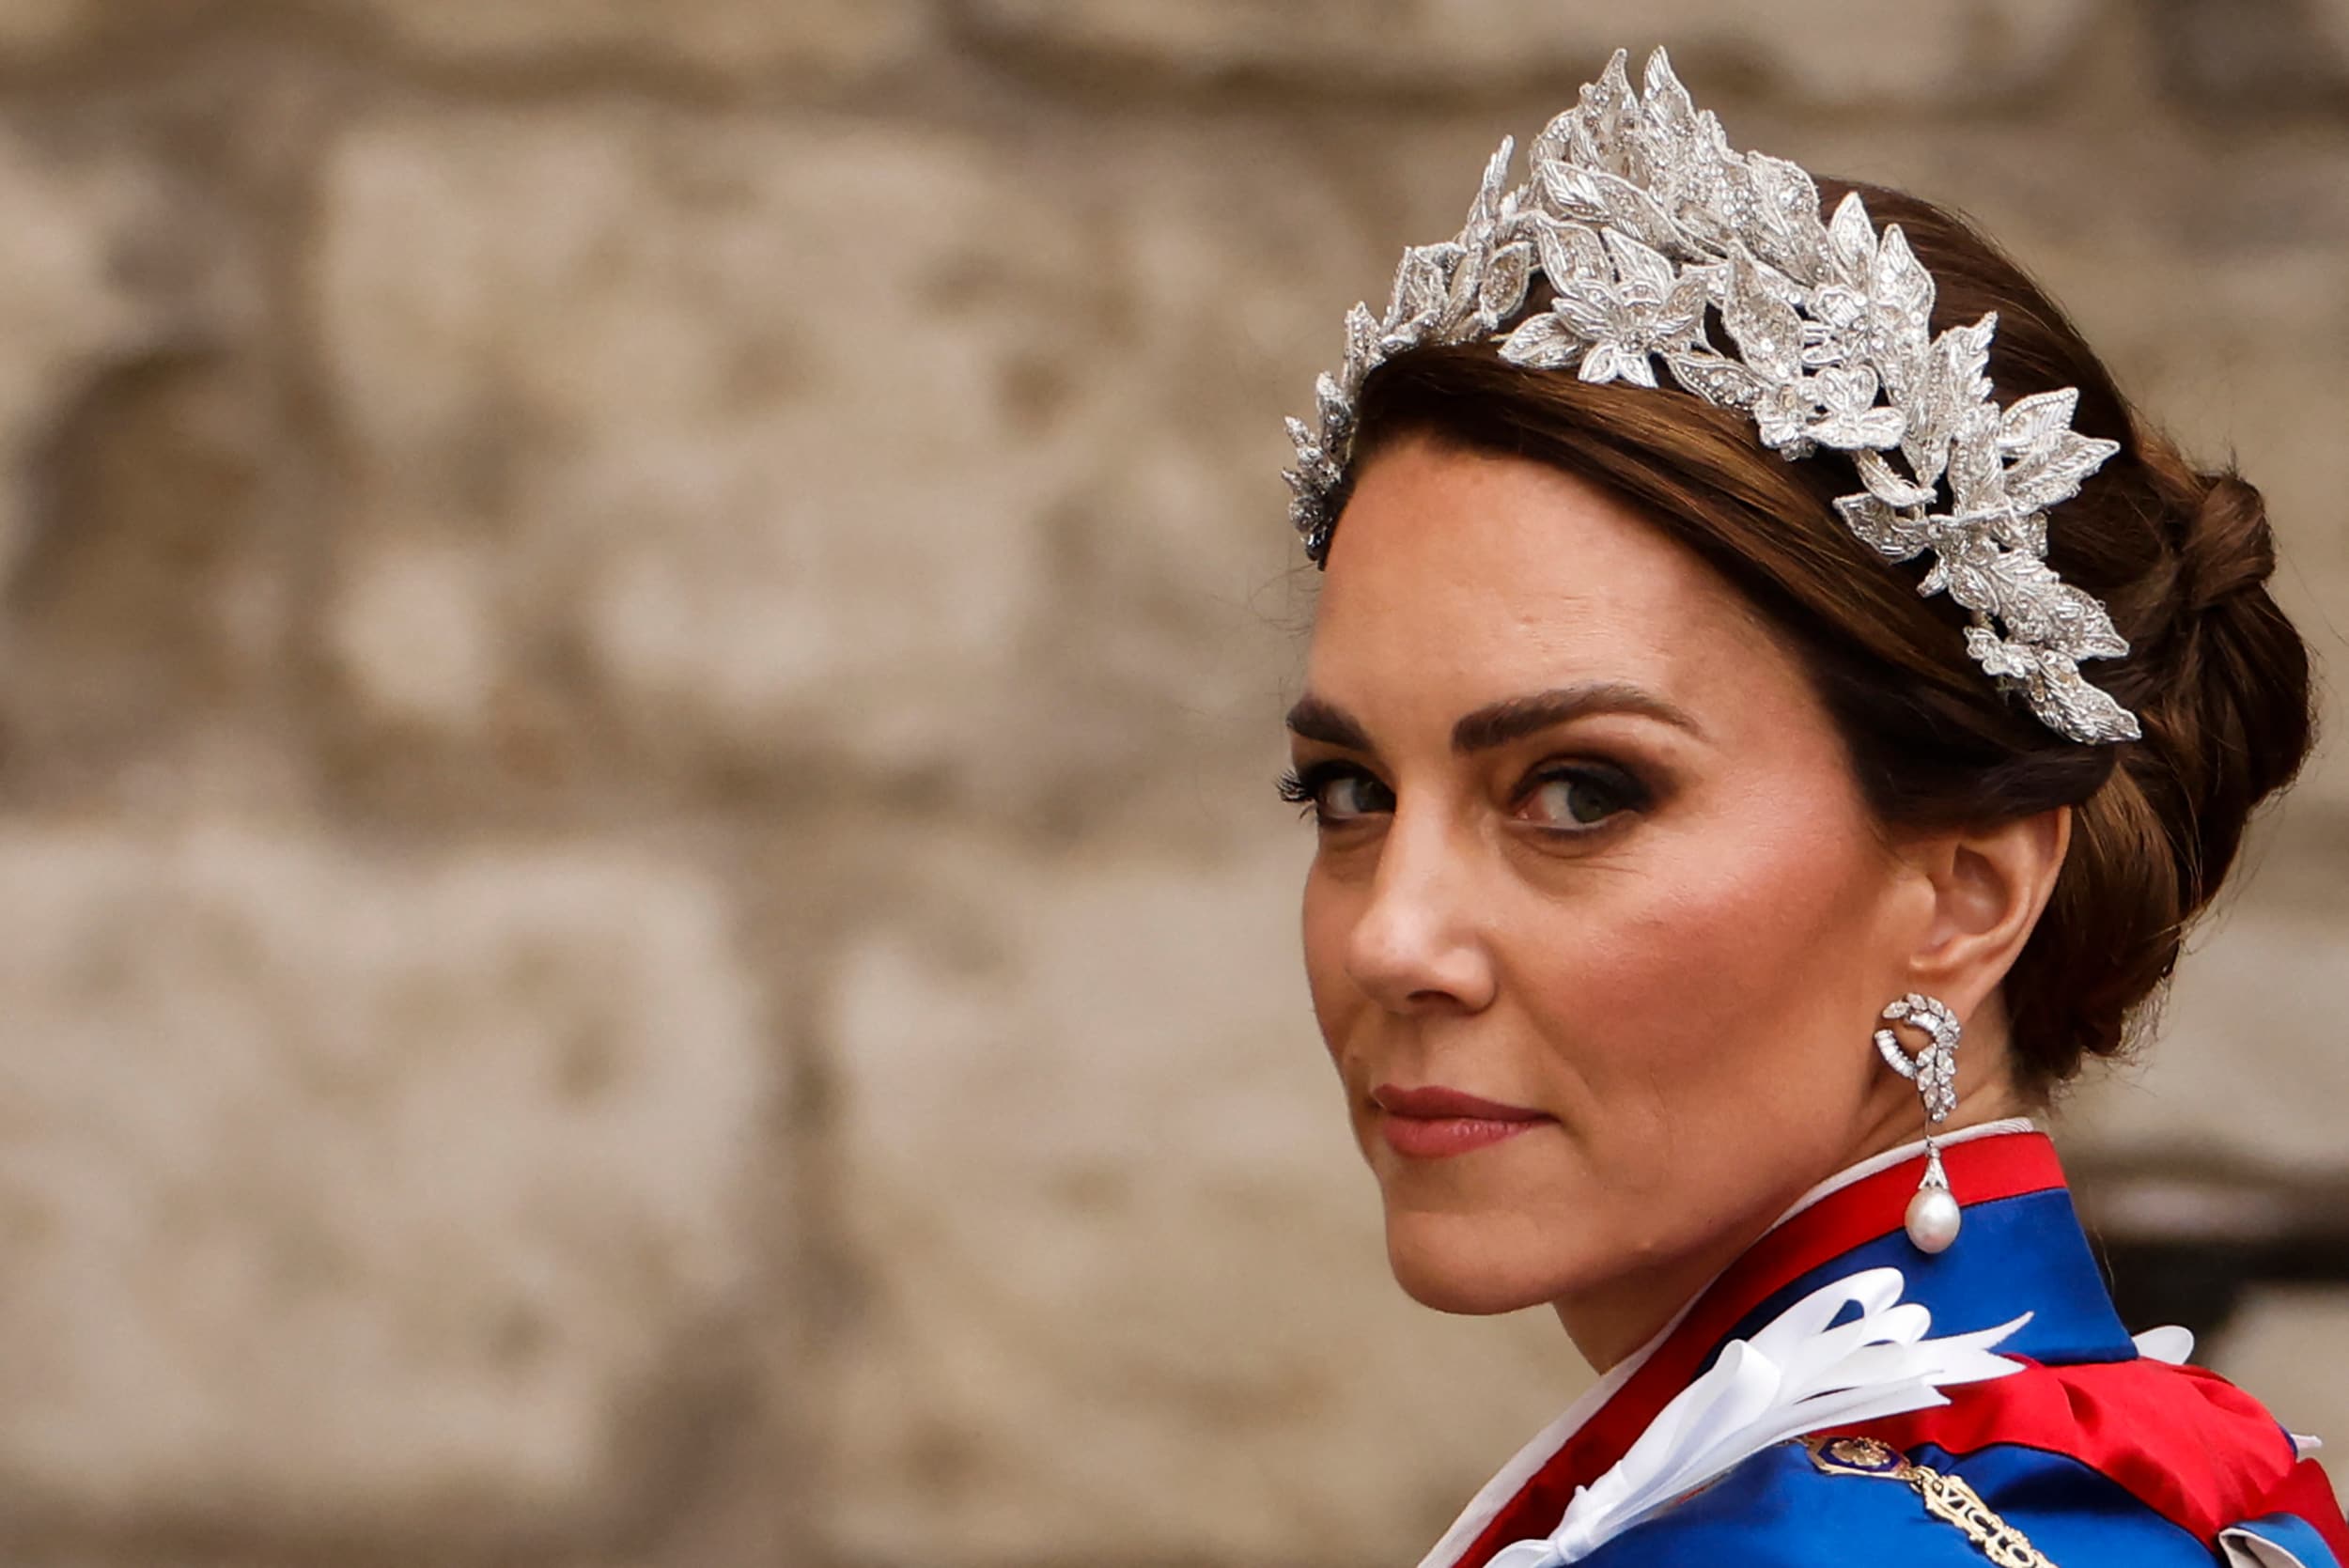 Armia brytyjska twierdzi, że Kate Middleton weźmie udział w dorocznej ceremonii, ale później usuwa post